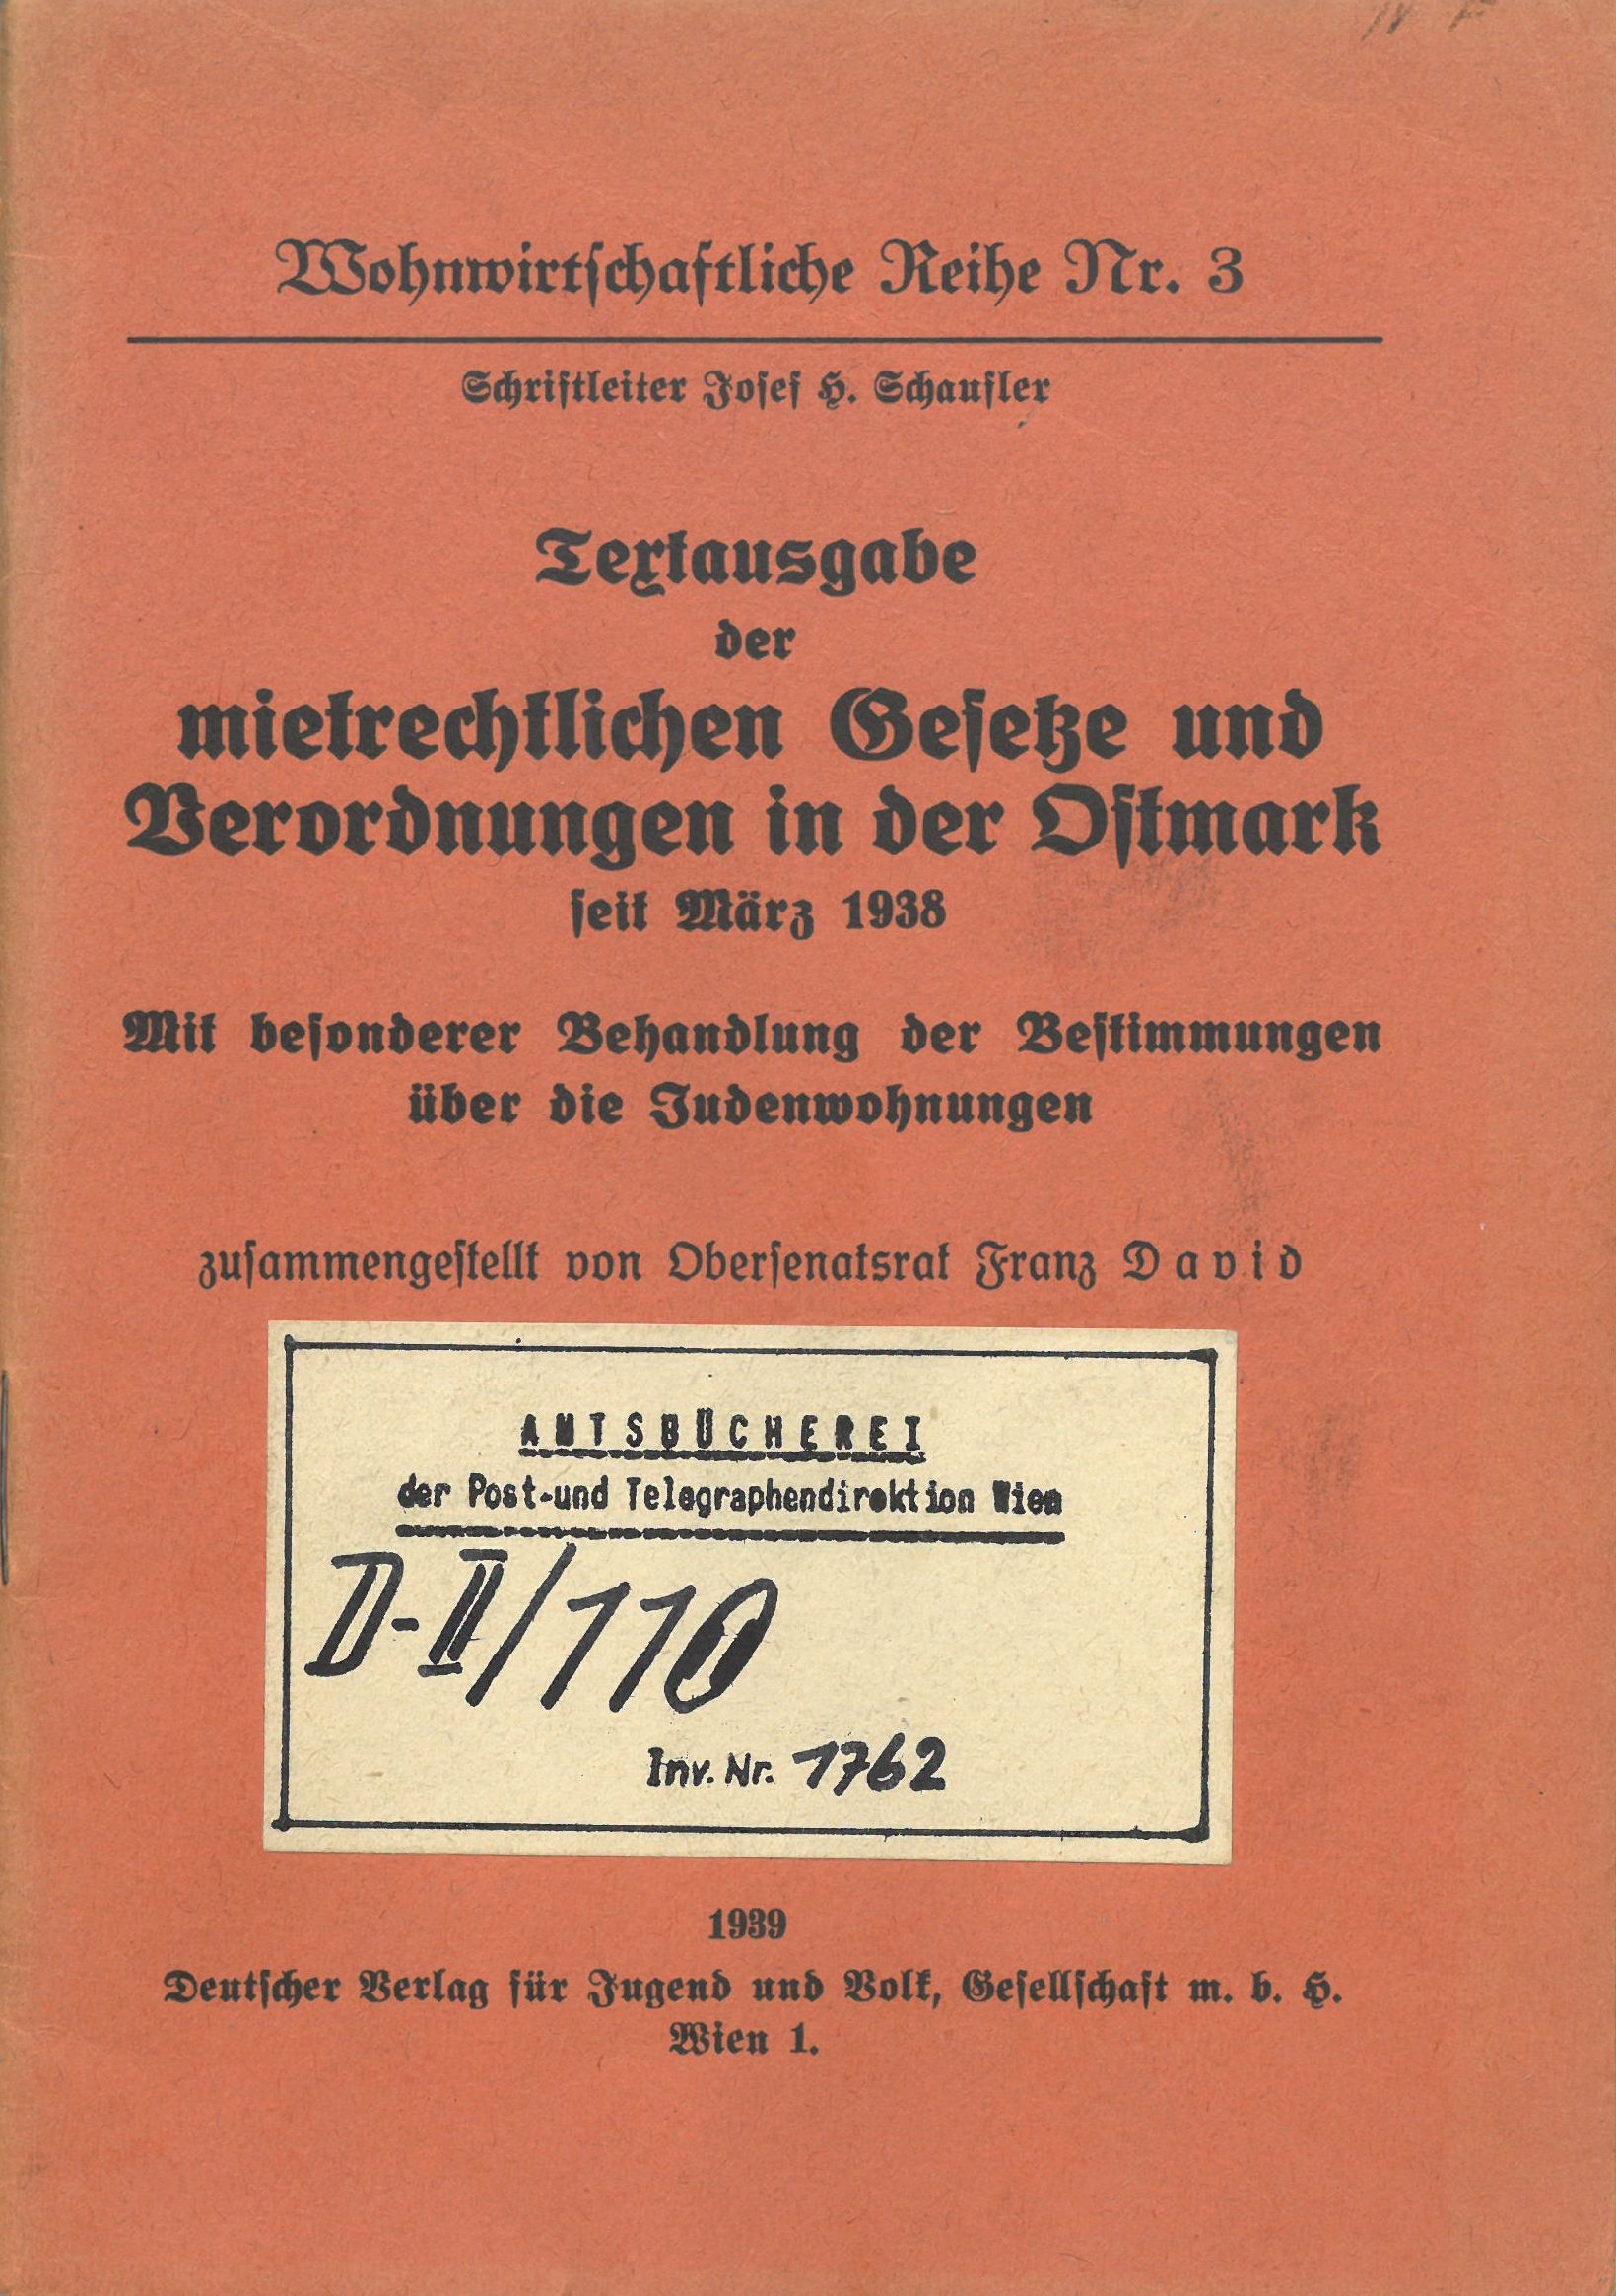 Textausgabe der mietrechtlichen Gesetze und Verordnungen in der Ostmark seit März 1938, Mit besonderer Behandlung der Bestimmungen über die Judenwohnungen.